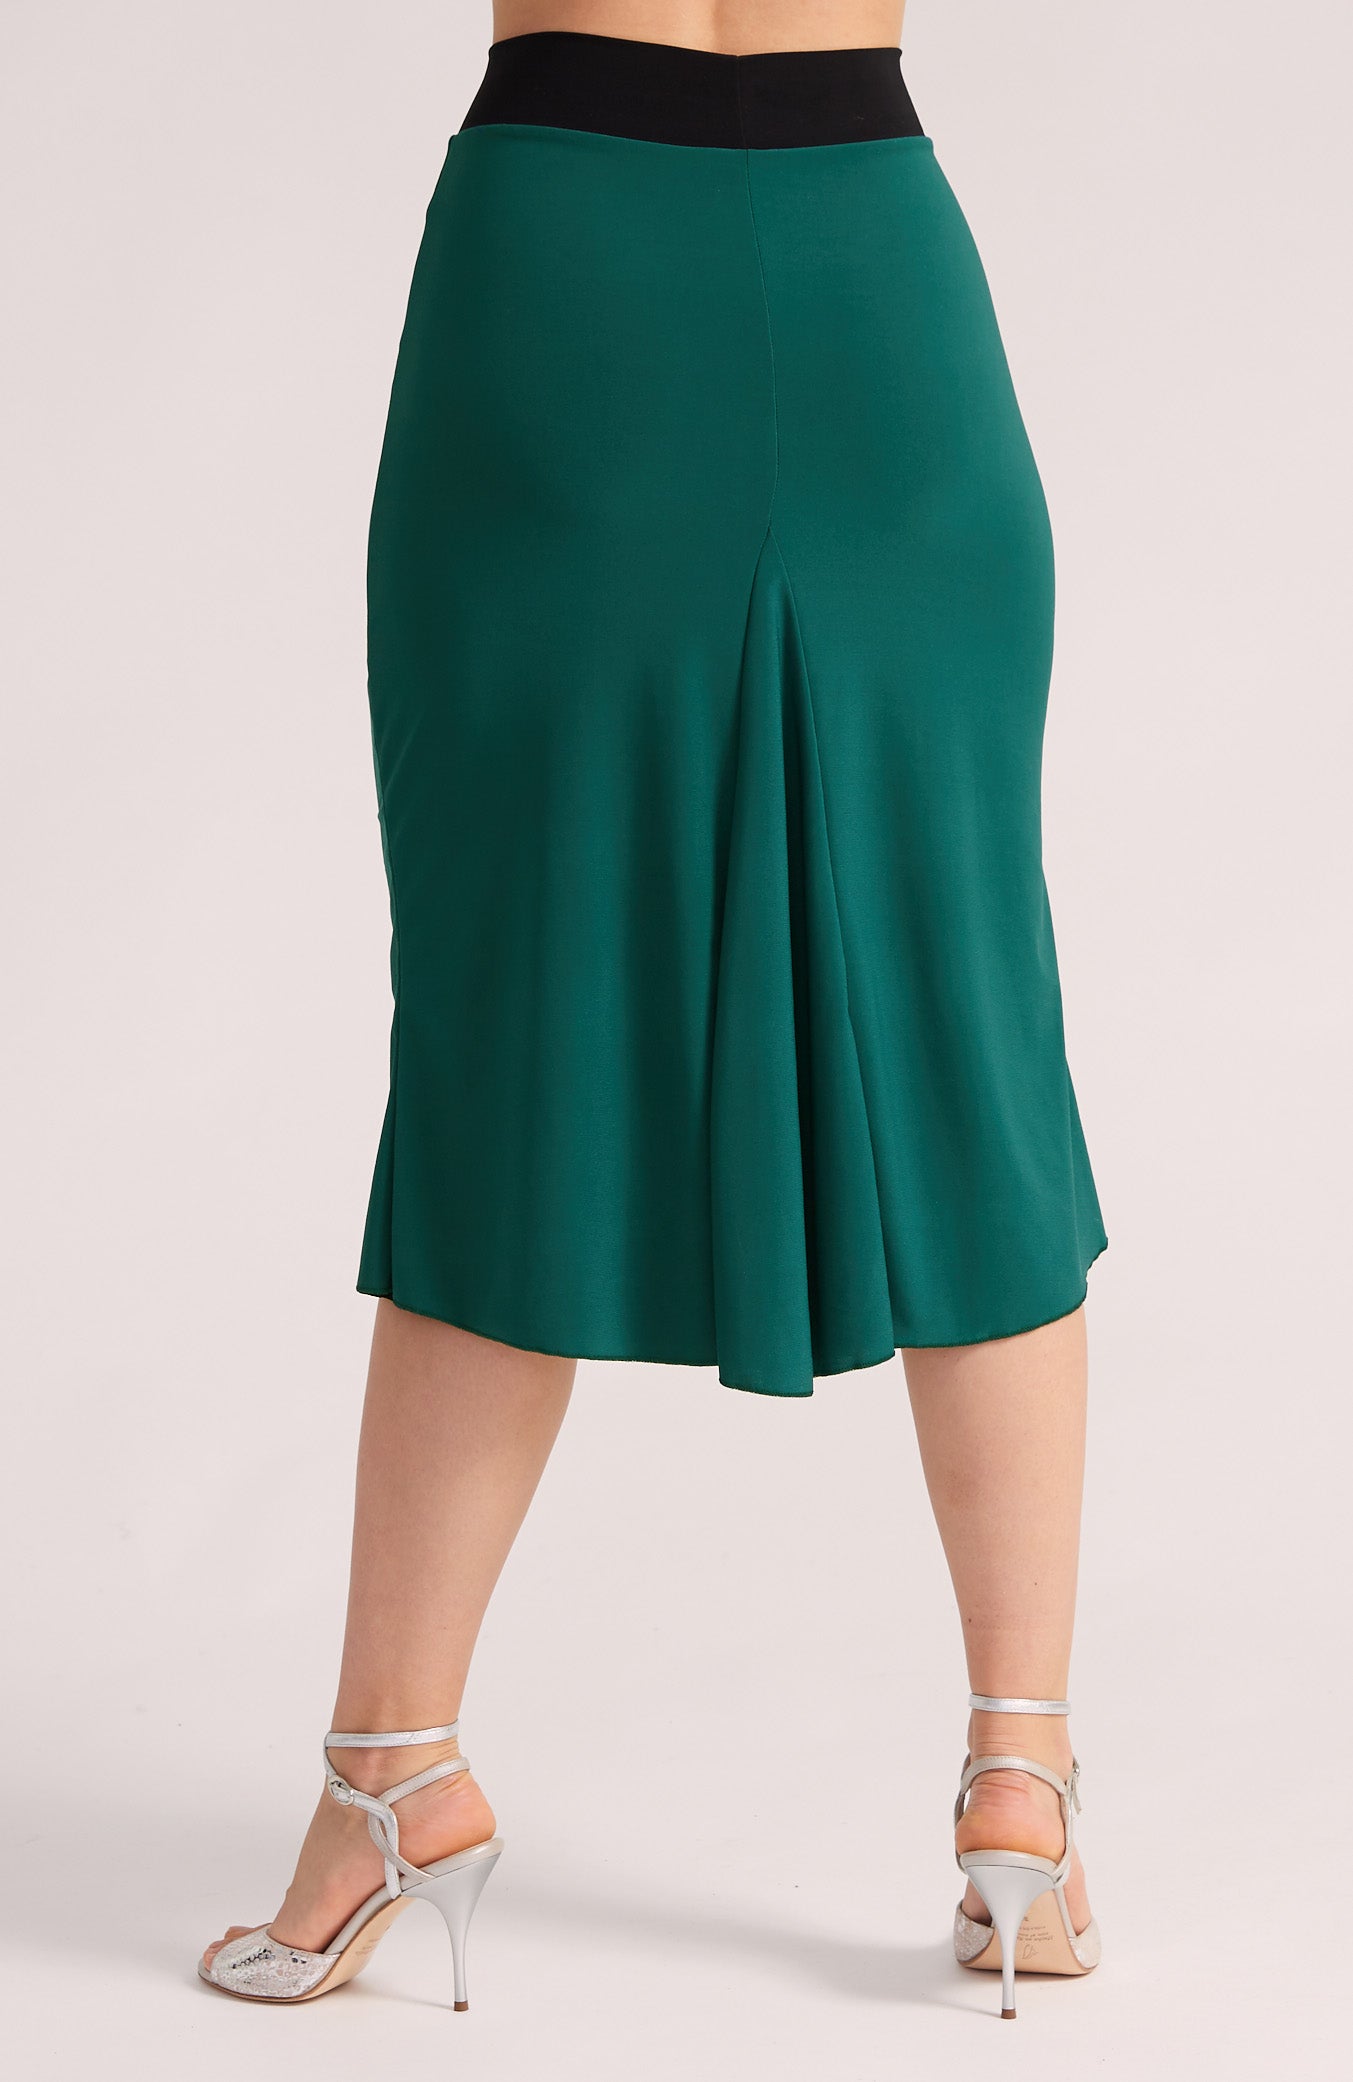 JAZMIN - Reversible Godet Skirt in Green / Black